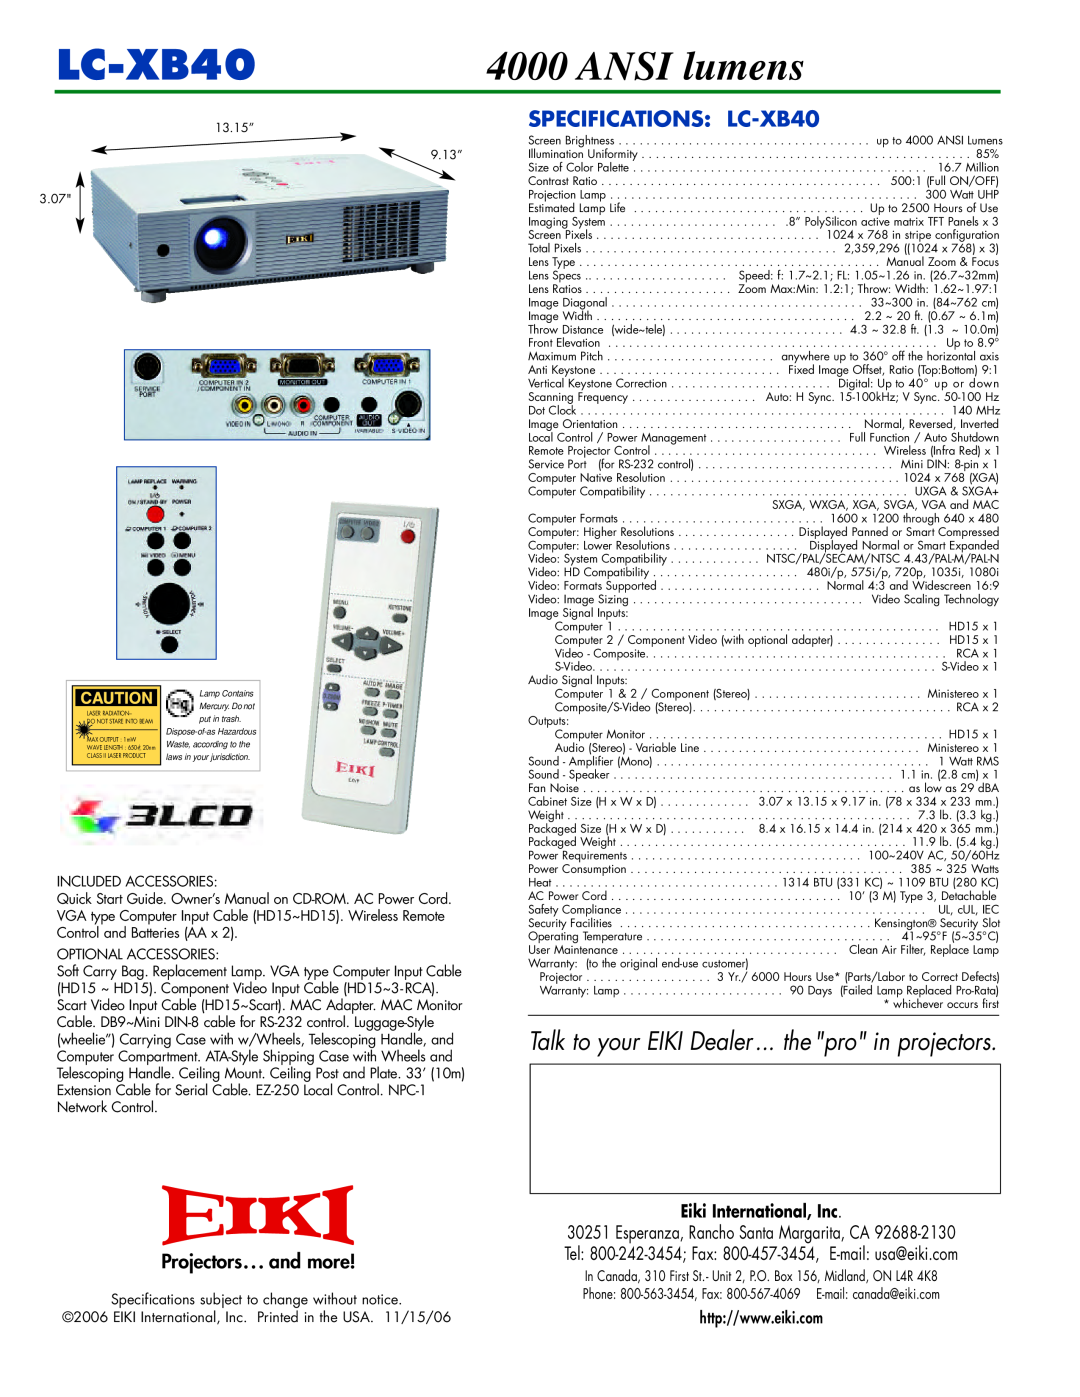 Eiki warranty 2345, ANSI lumens, SPECIFICATIONS LC-XB40, Eiki International, Inc 